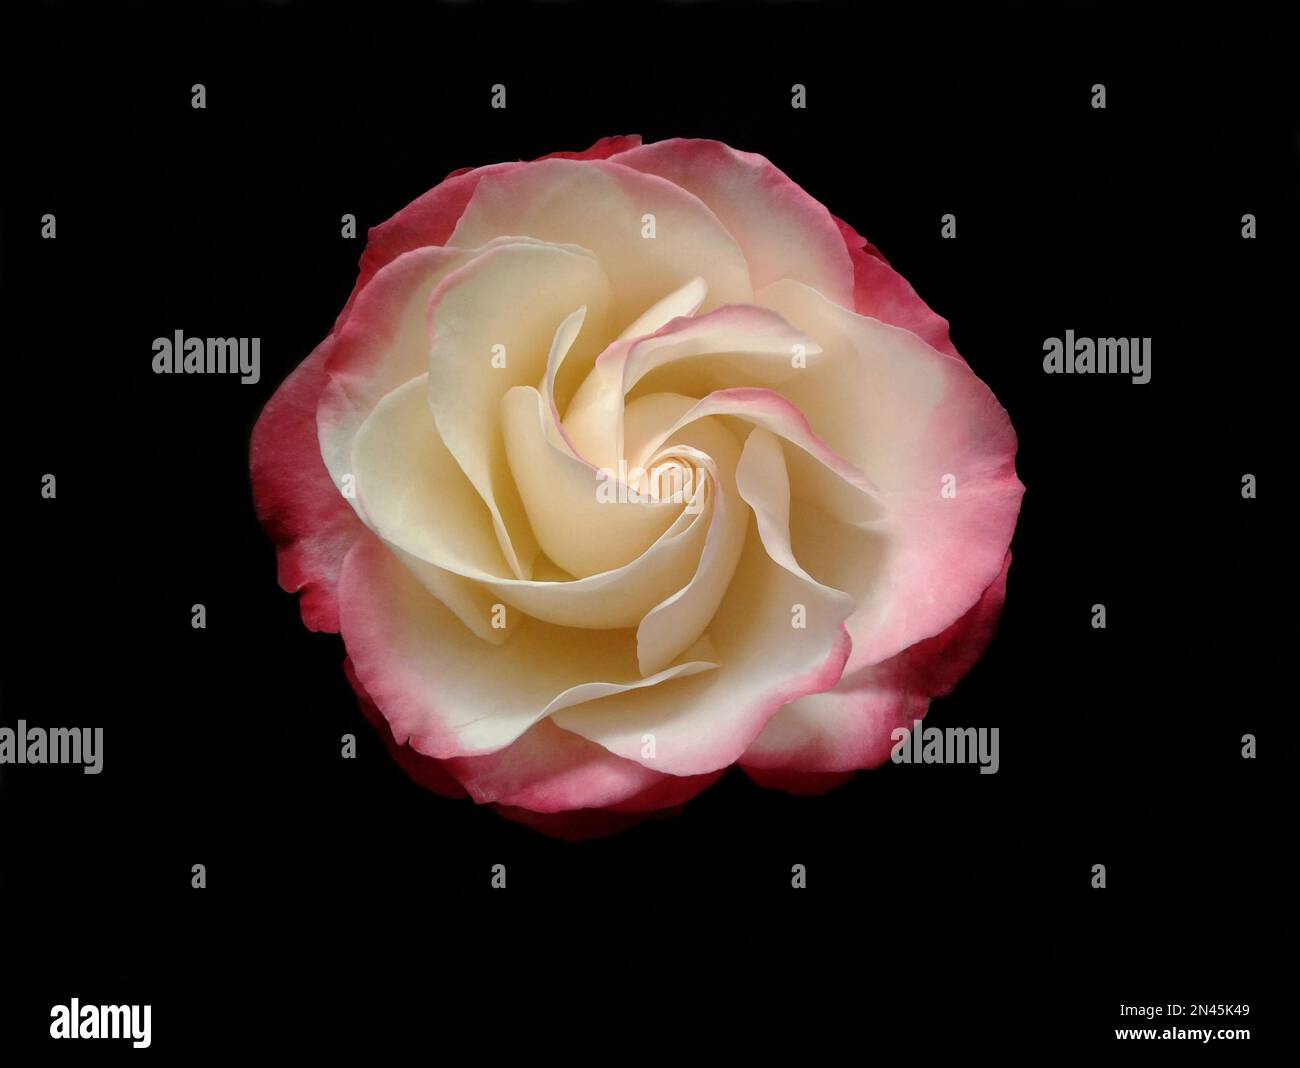 rose on black background Stock Photo